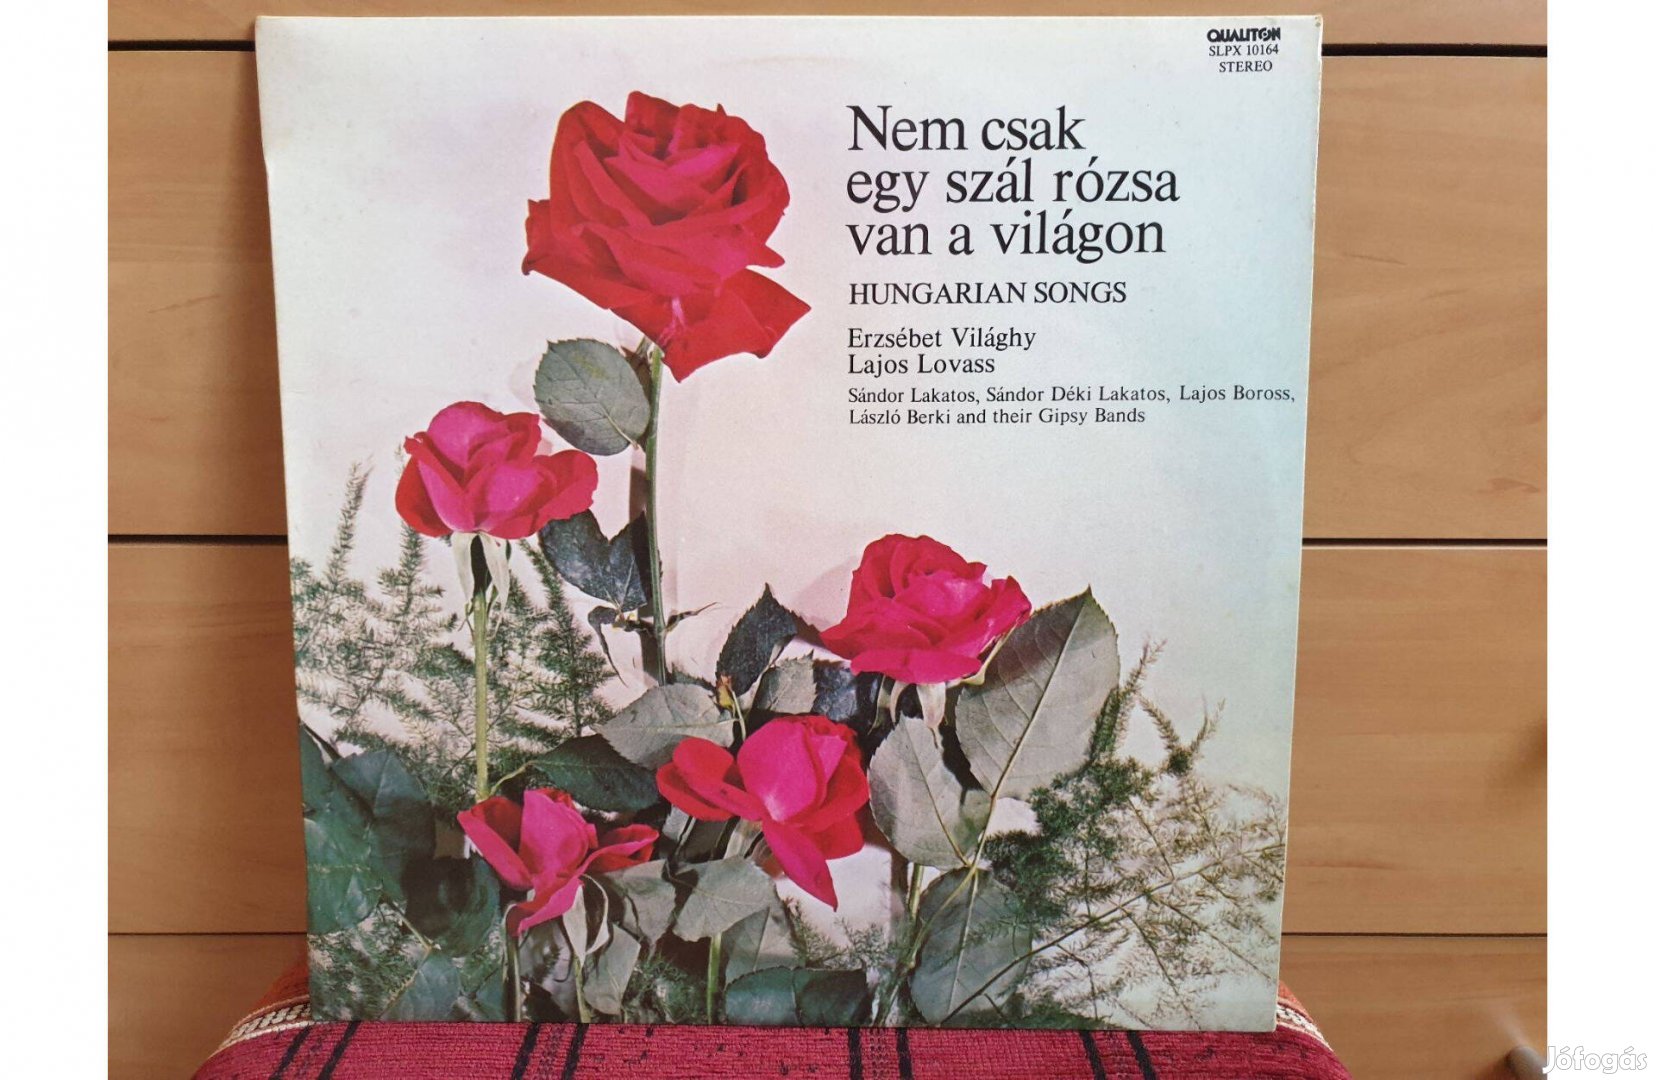 Nem csak egy szál rózsa. hanglemez bakelit lemez Vinyl